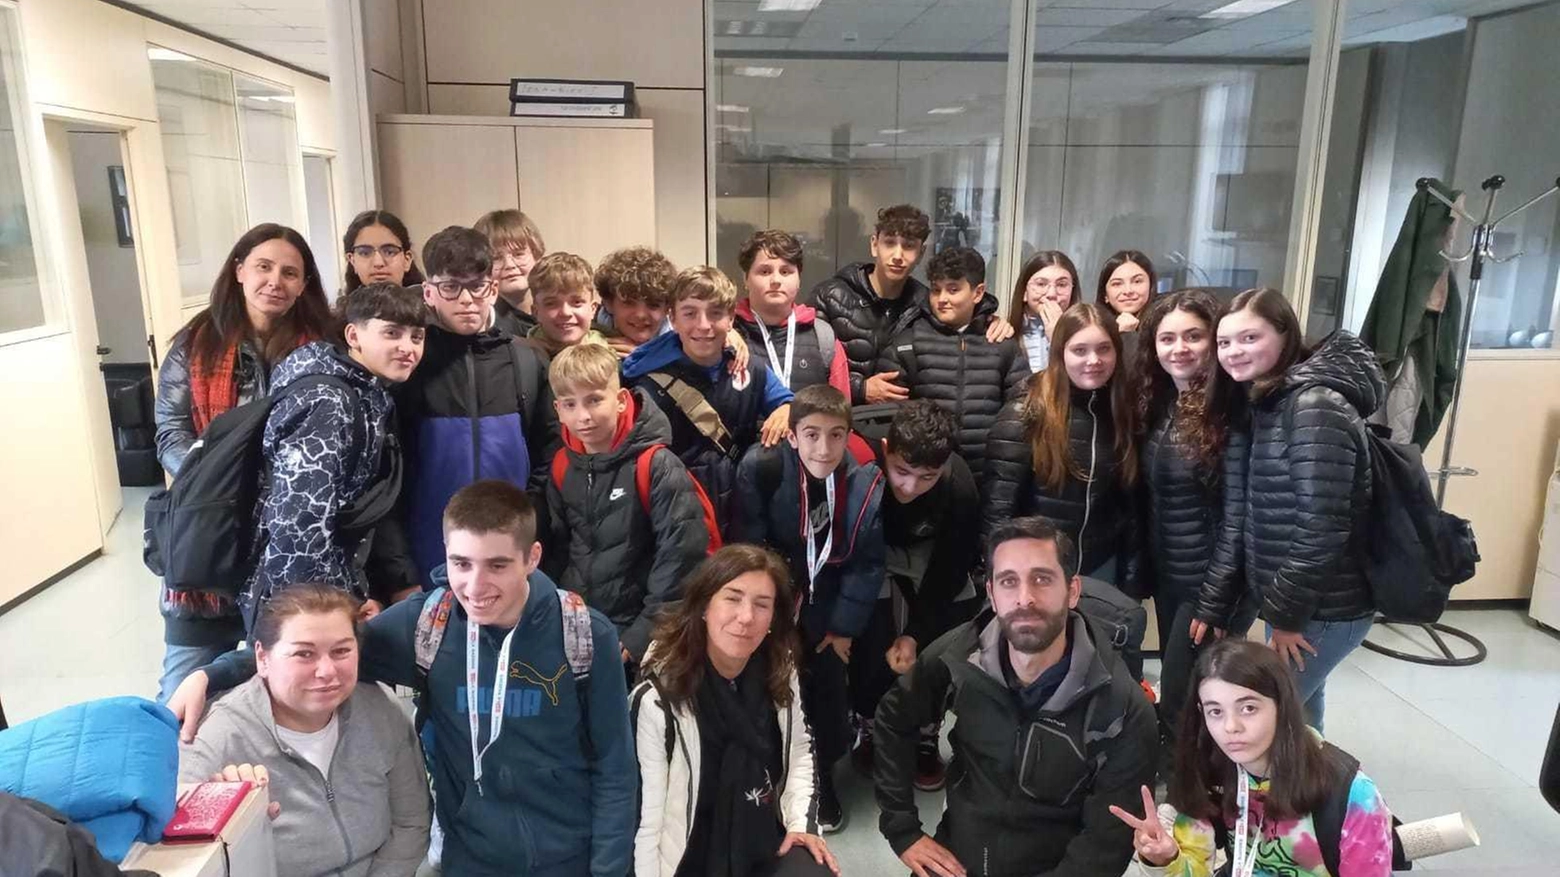 Ragazzi della scuola "Pistelli" di Camaiore visitano redazione de La Nazione a Firenze, partecipando al progetto "Cronisti in classe". Esperienza formativa sul giornalismo.